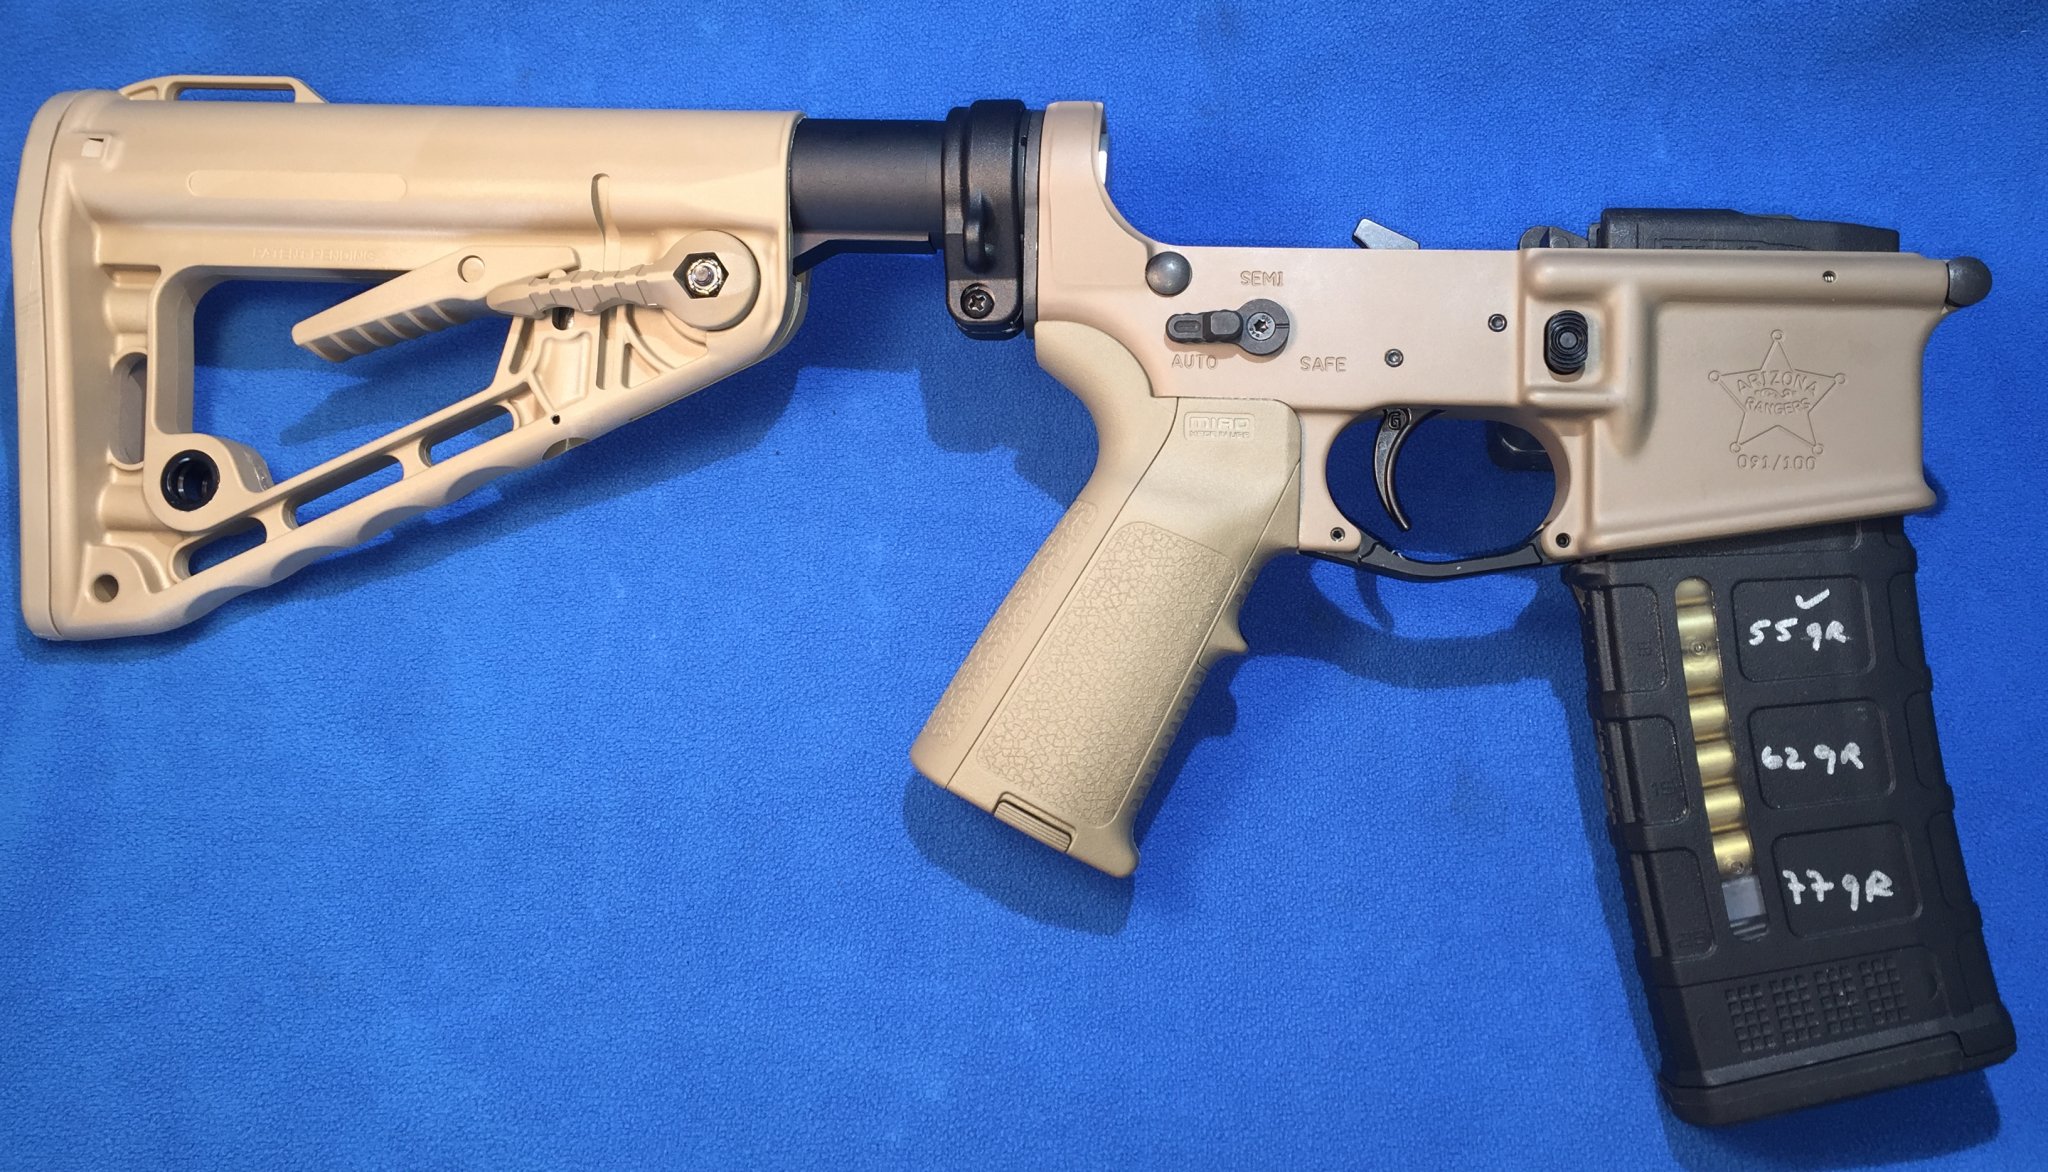 Piston system on 300blk pistol | Sniper's Hide Forum